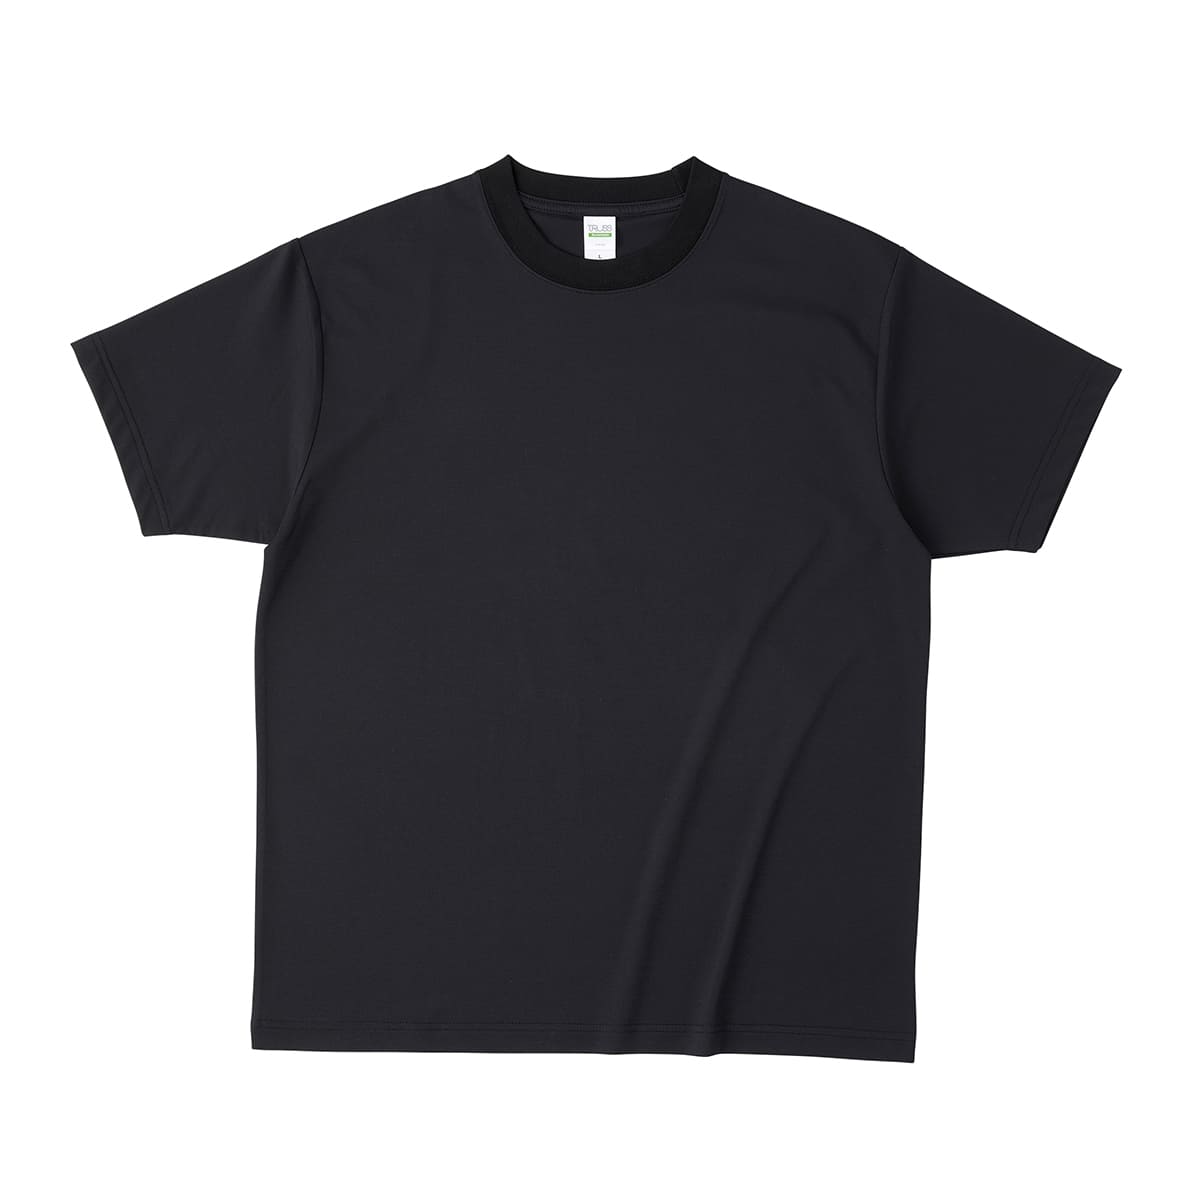 Tシャツ メンズ 無地 TRUSS トラス コットンライクドライTシャツ (リサイクルポリ50%) ...